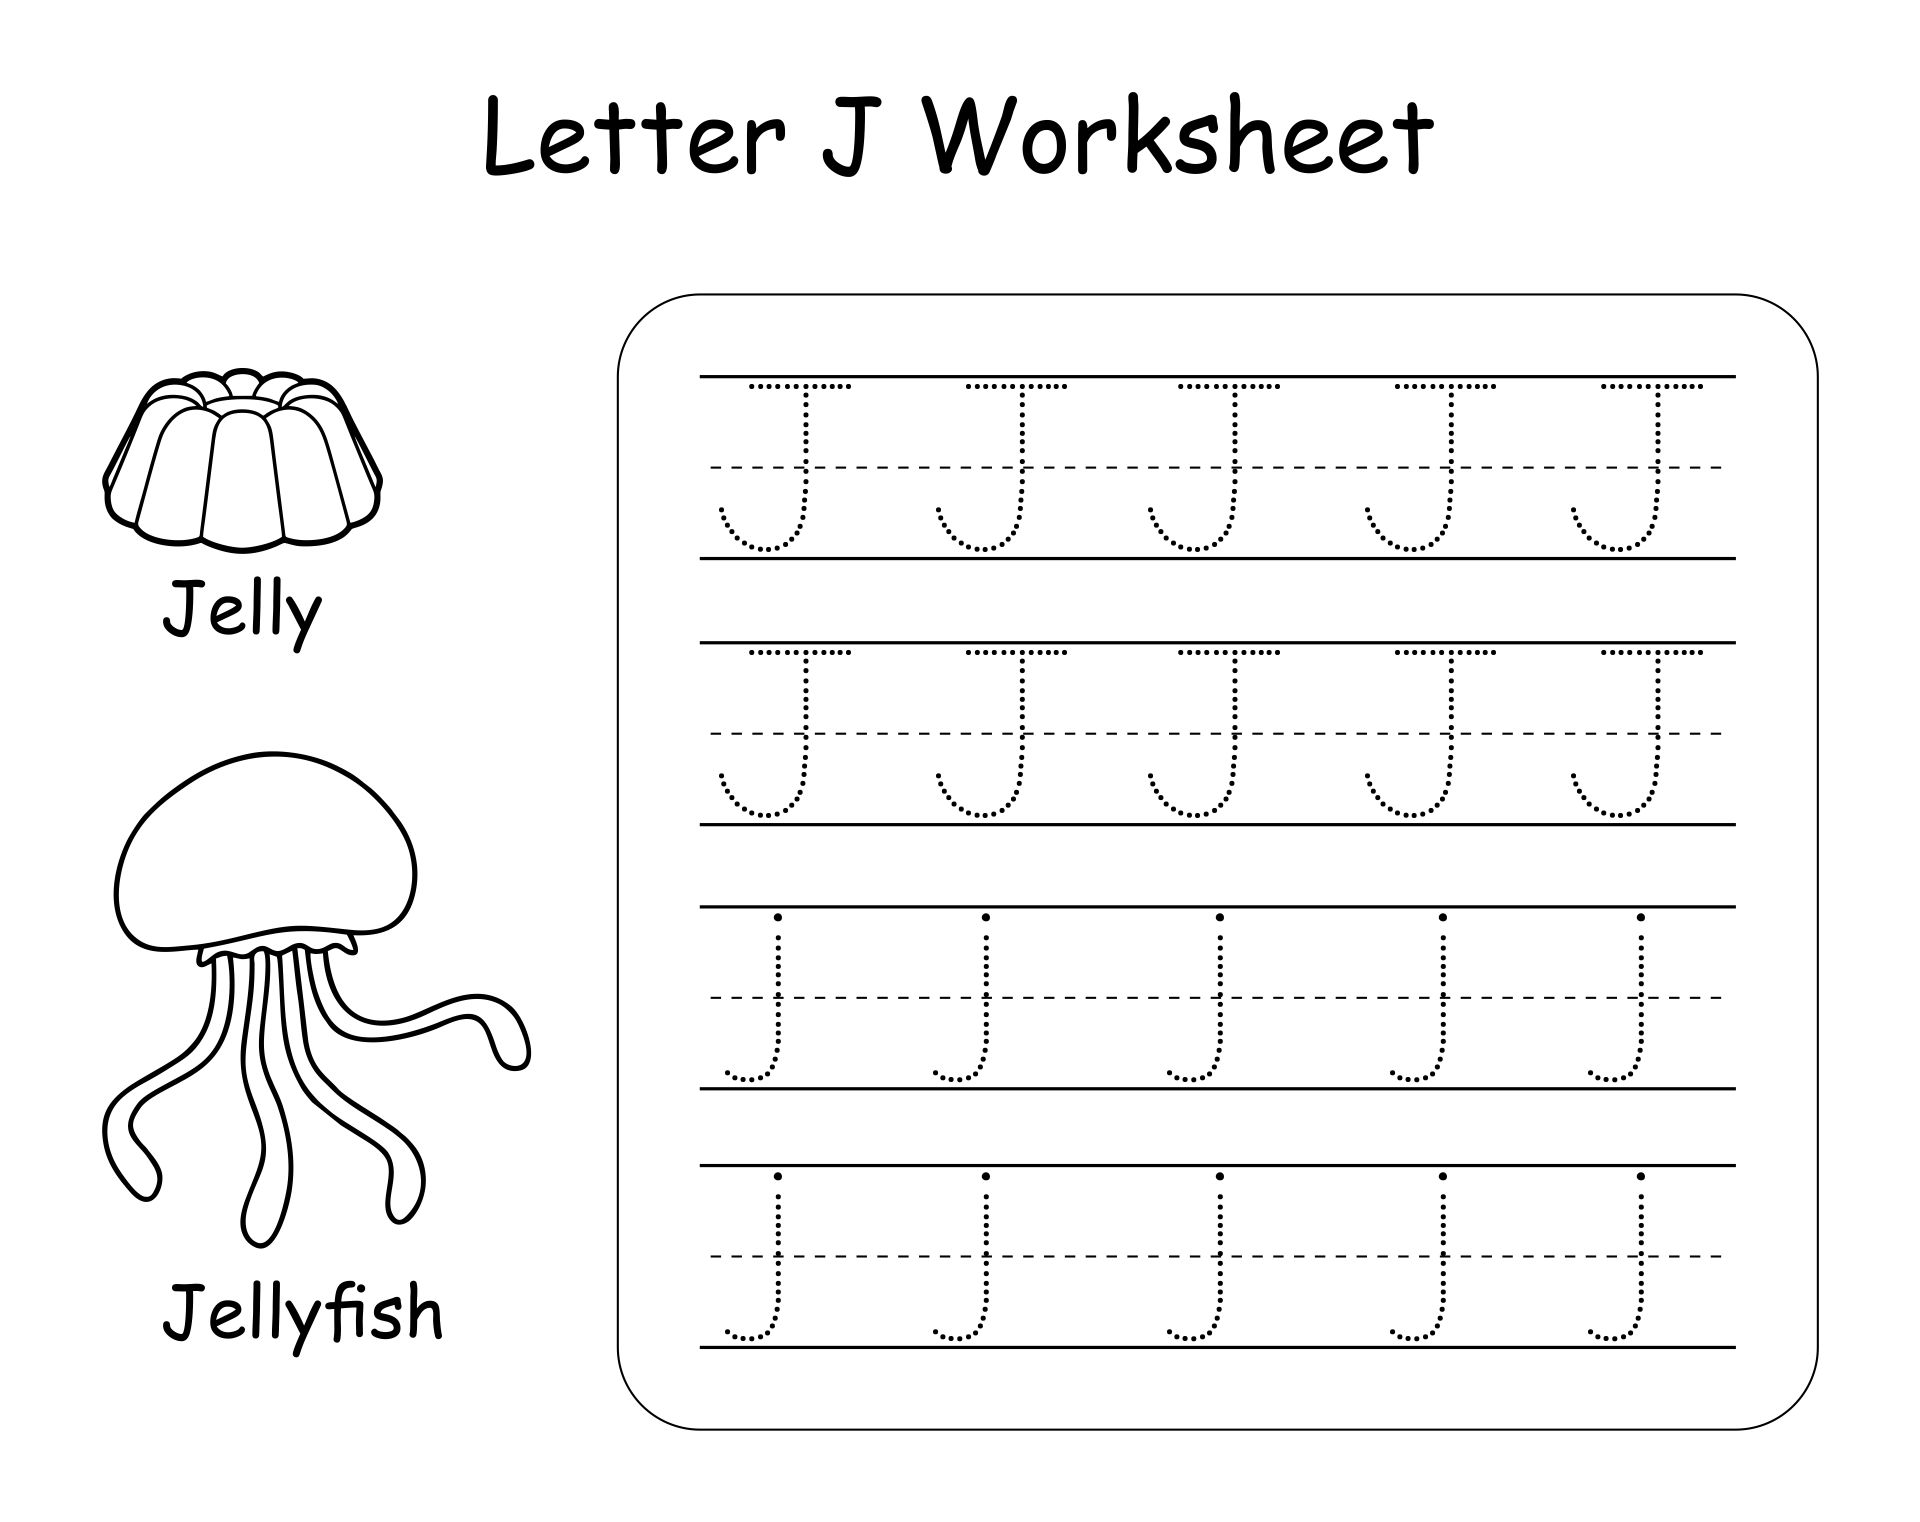 letter-j-worksheets-easy-alphabetworksheetsfreecom-letter-j